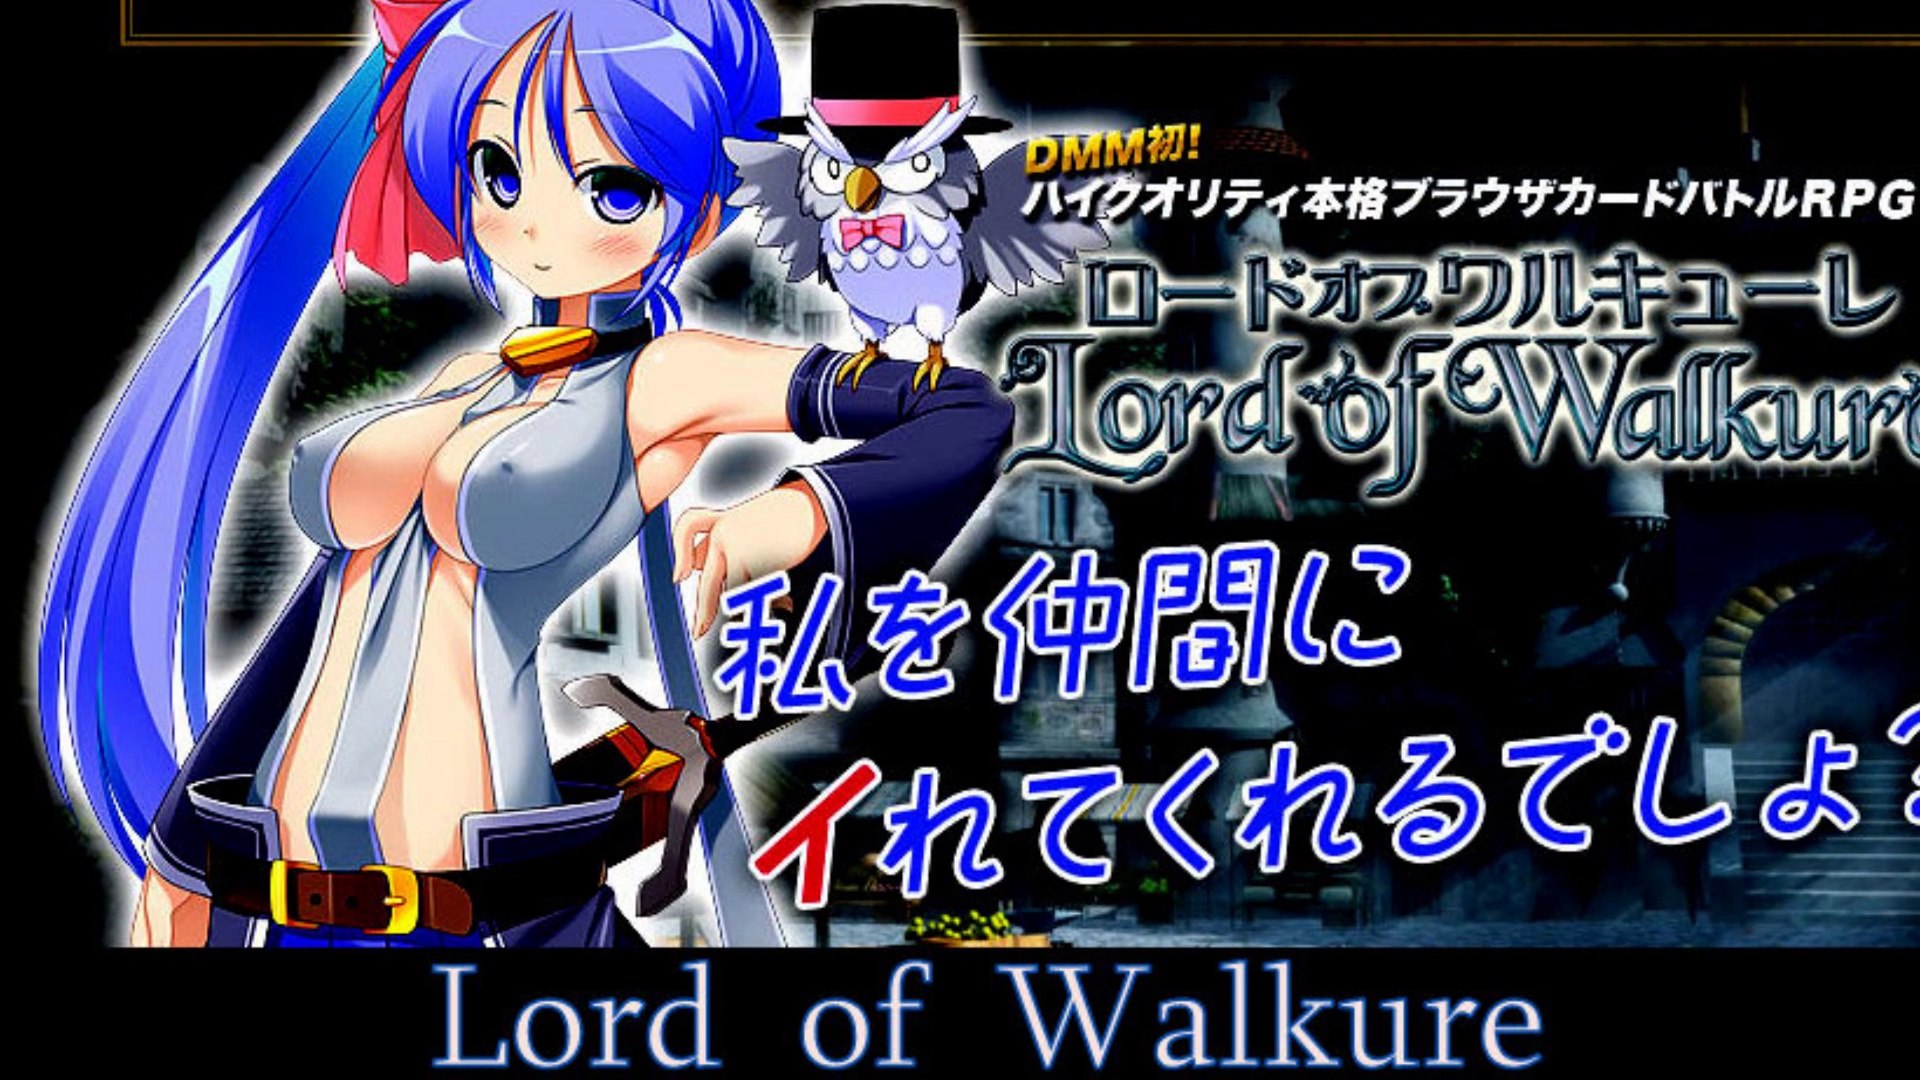 Lord of walkure